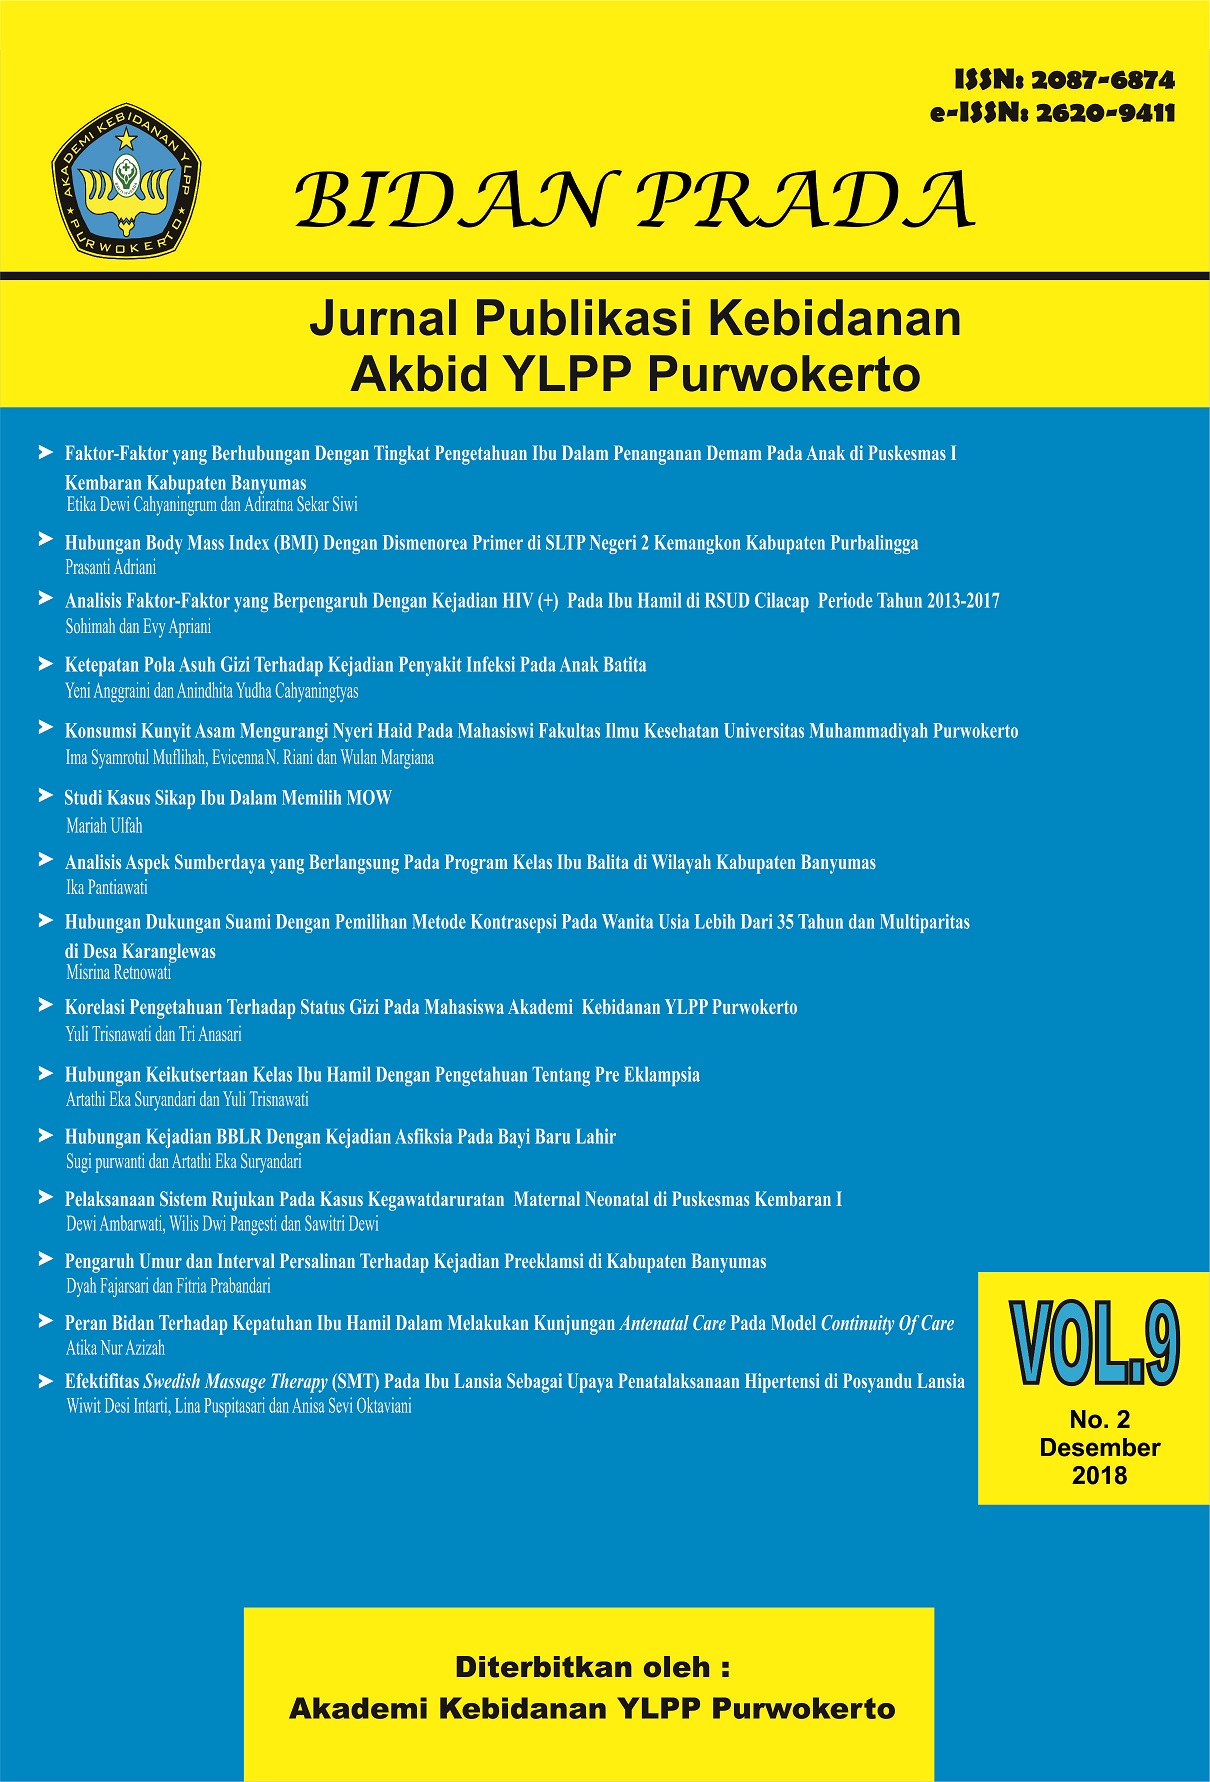 					View Vol. 9 No. 2 (2018): Jurnal Bidan Prada Edisi Desember 2018
				